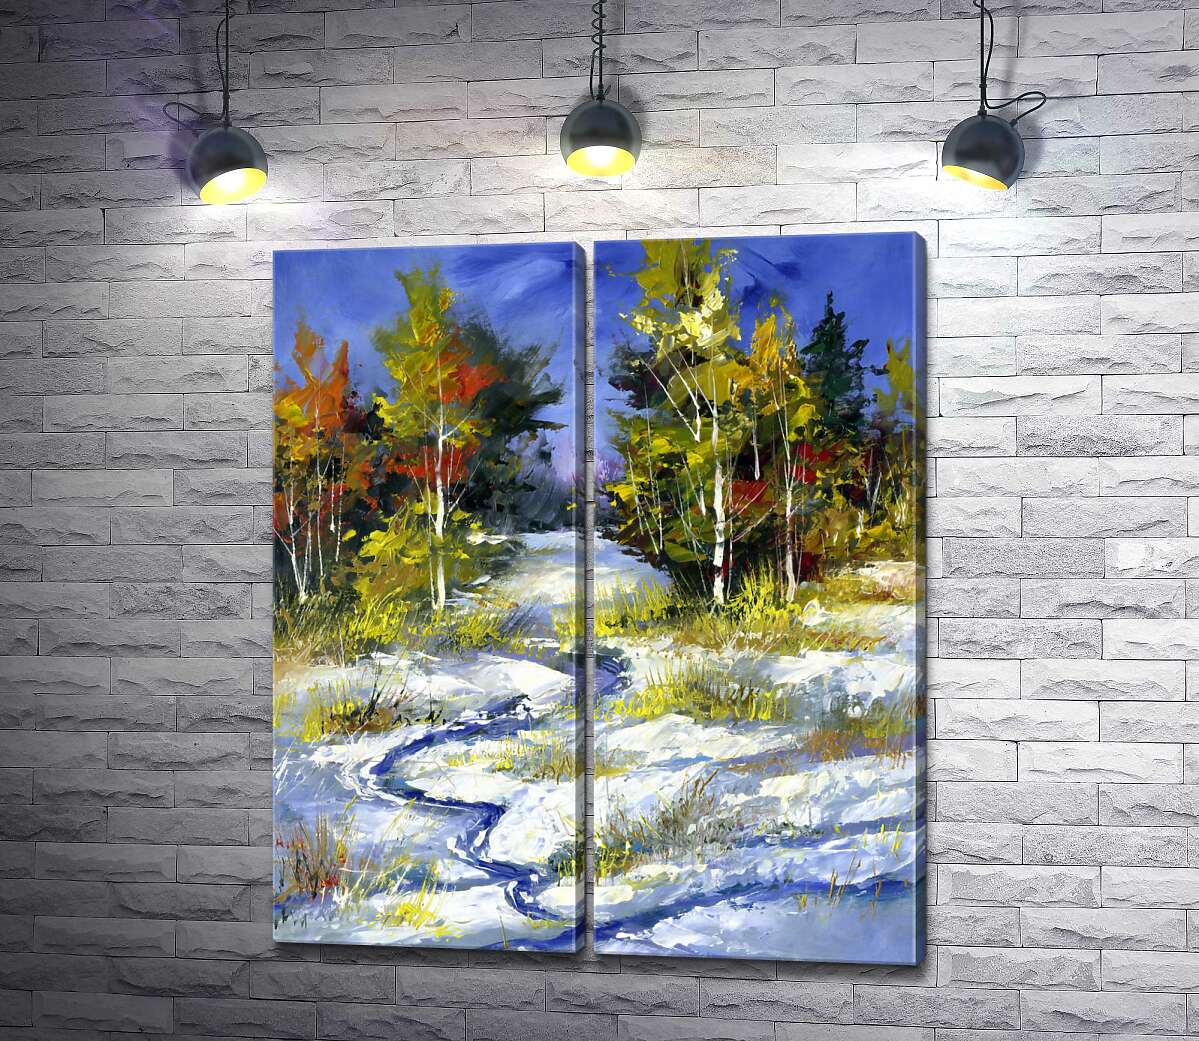 модульная картина Голубой ручей прокладывает дорогу в снегу между осенними деревьями